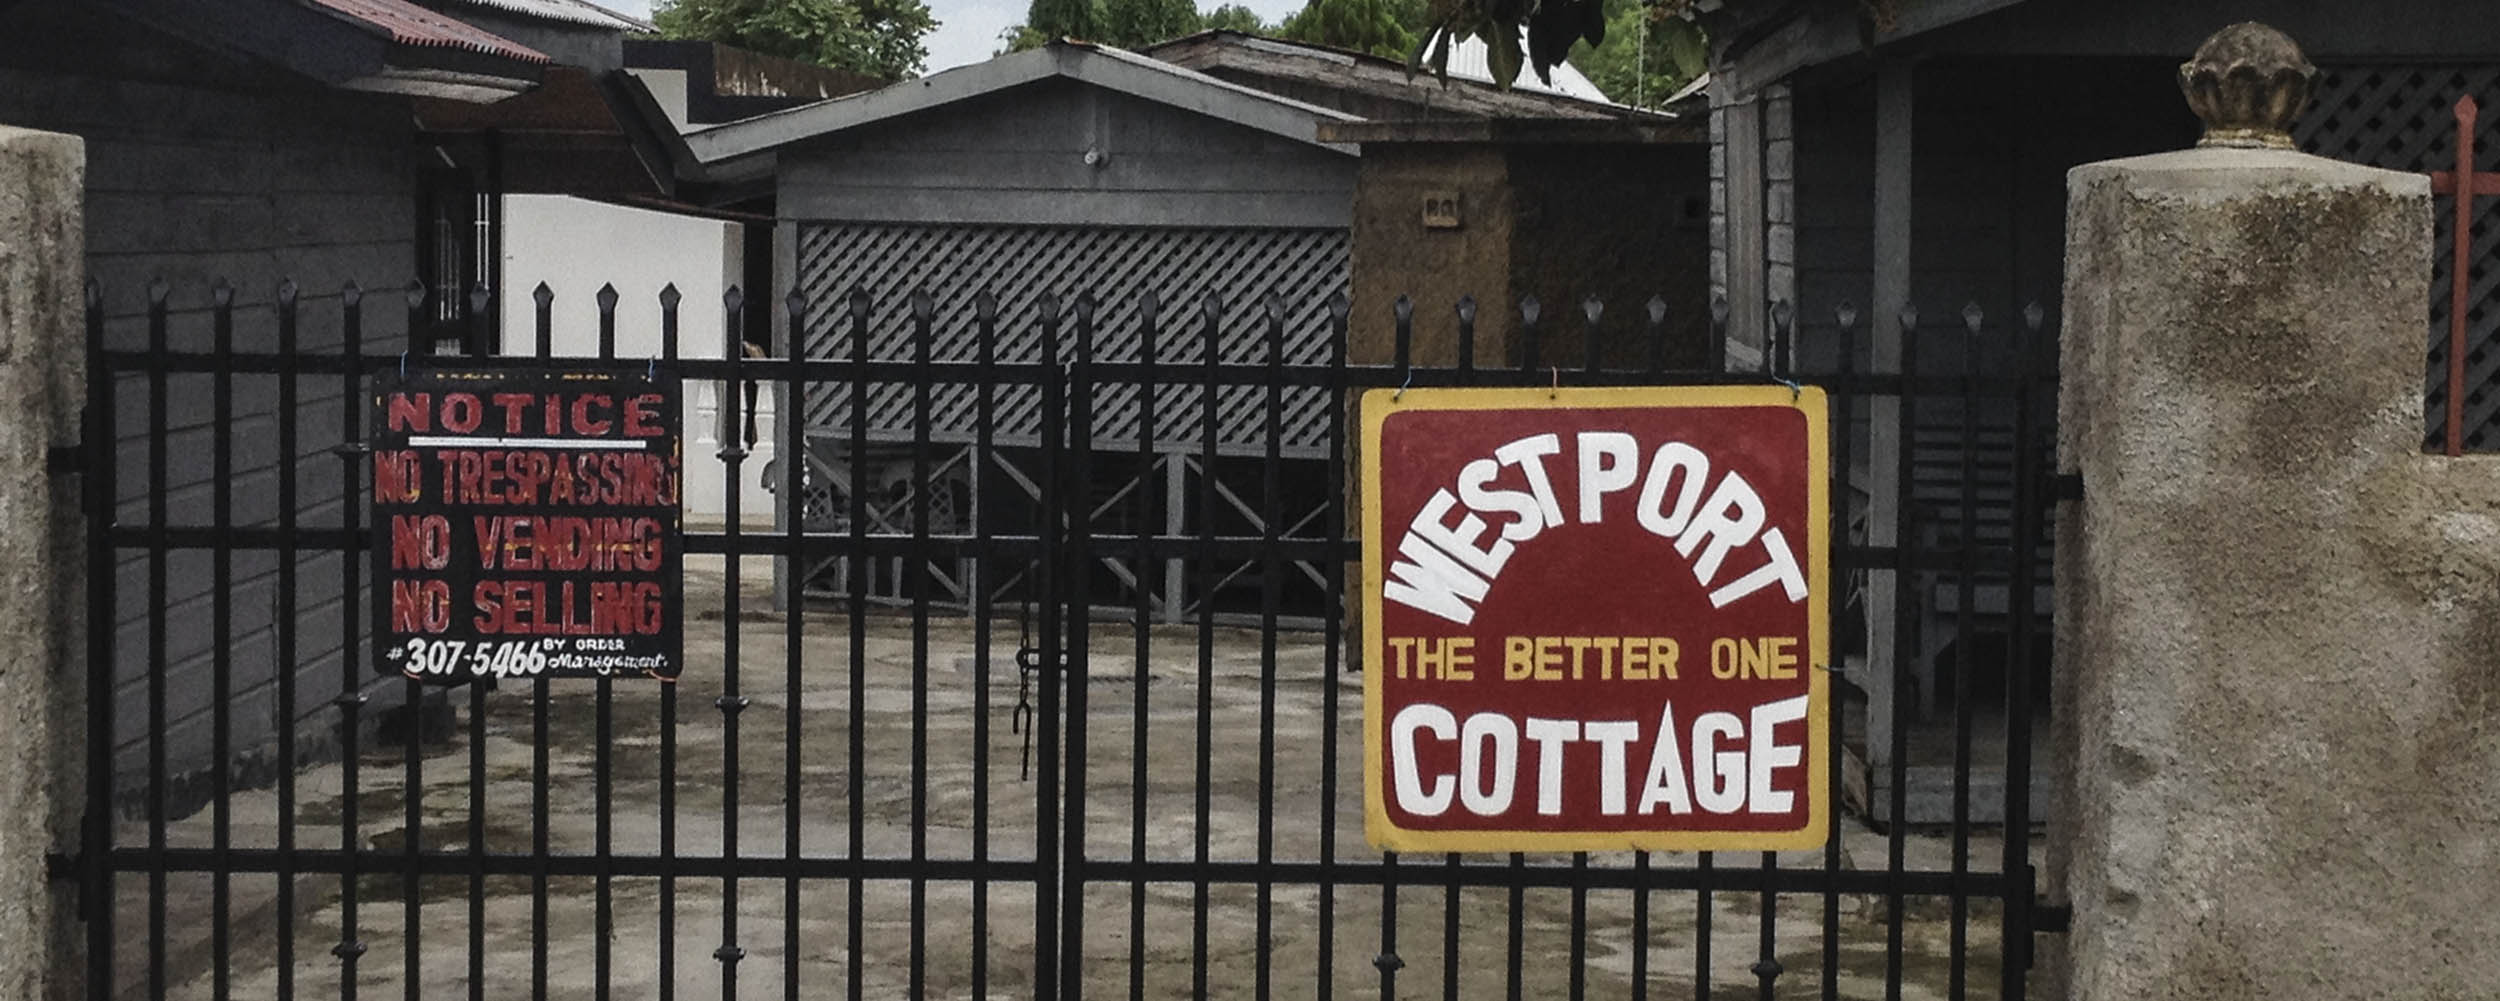 Westport Cottage - Negril Jamaica